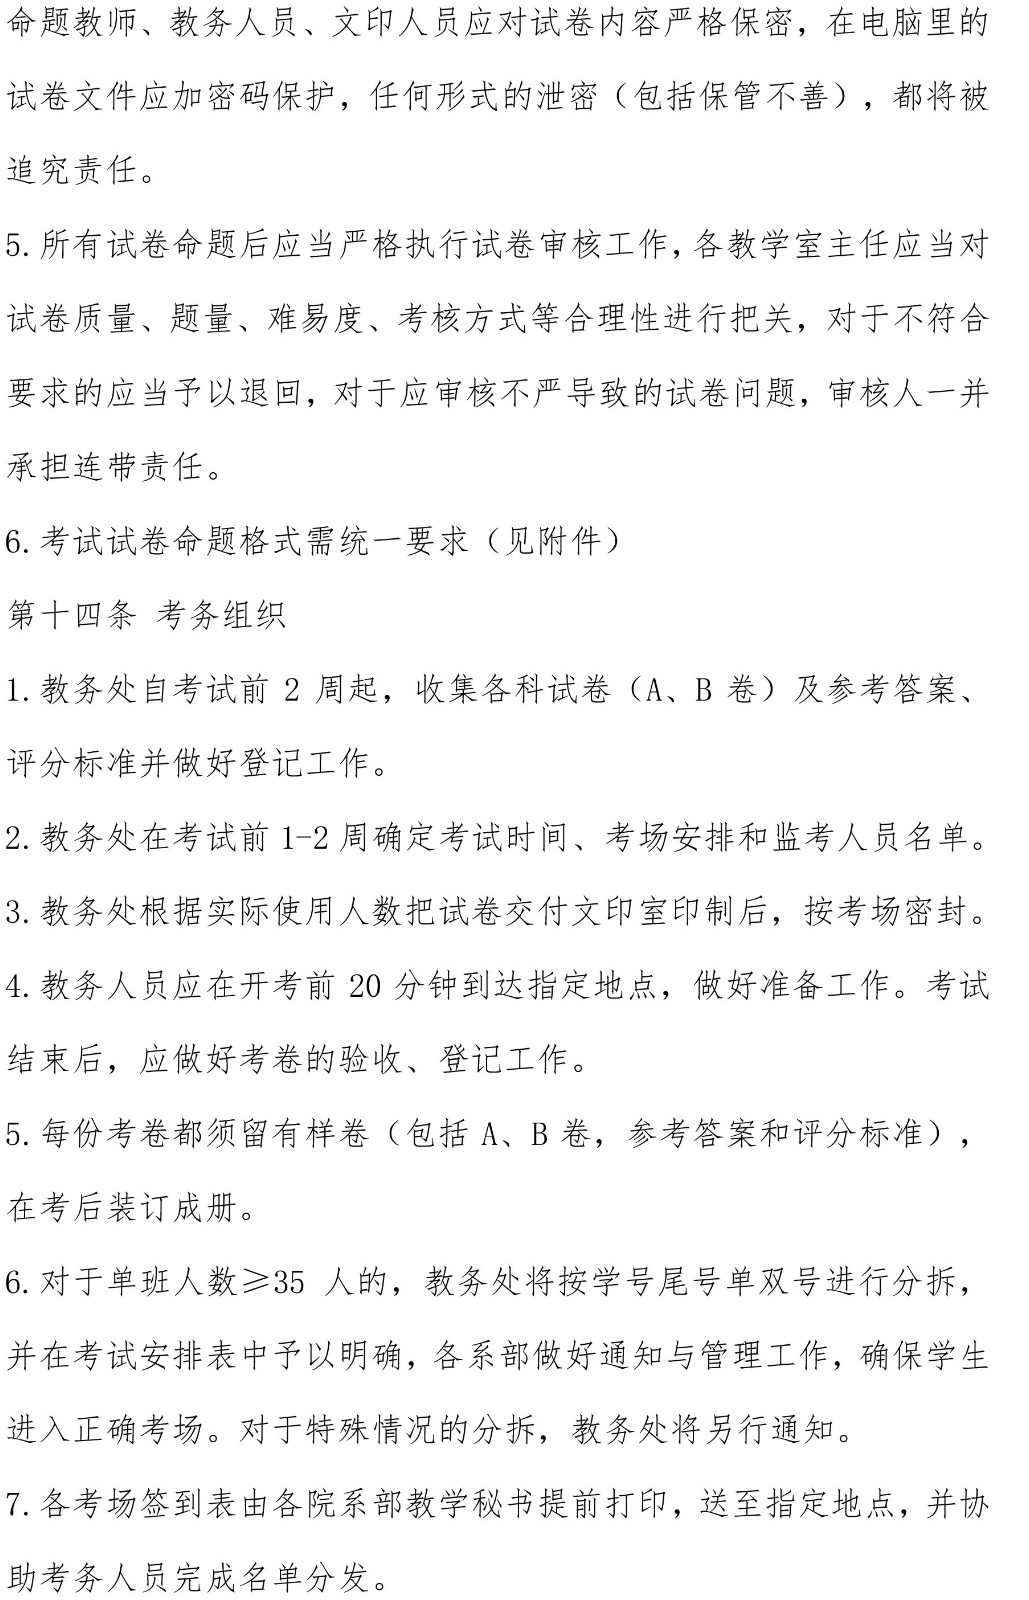 上海工商外国语职业学院考试管理规定（供院办发文��?4.jpg